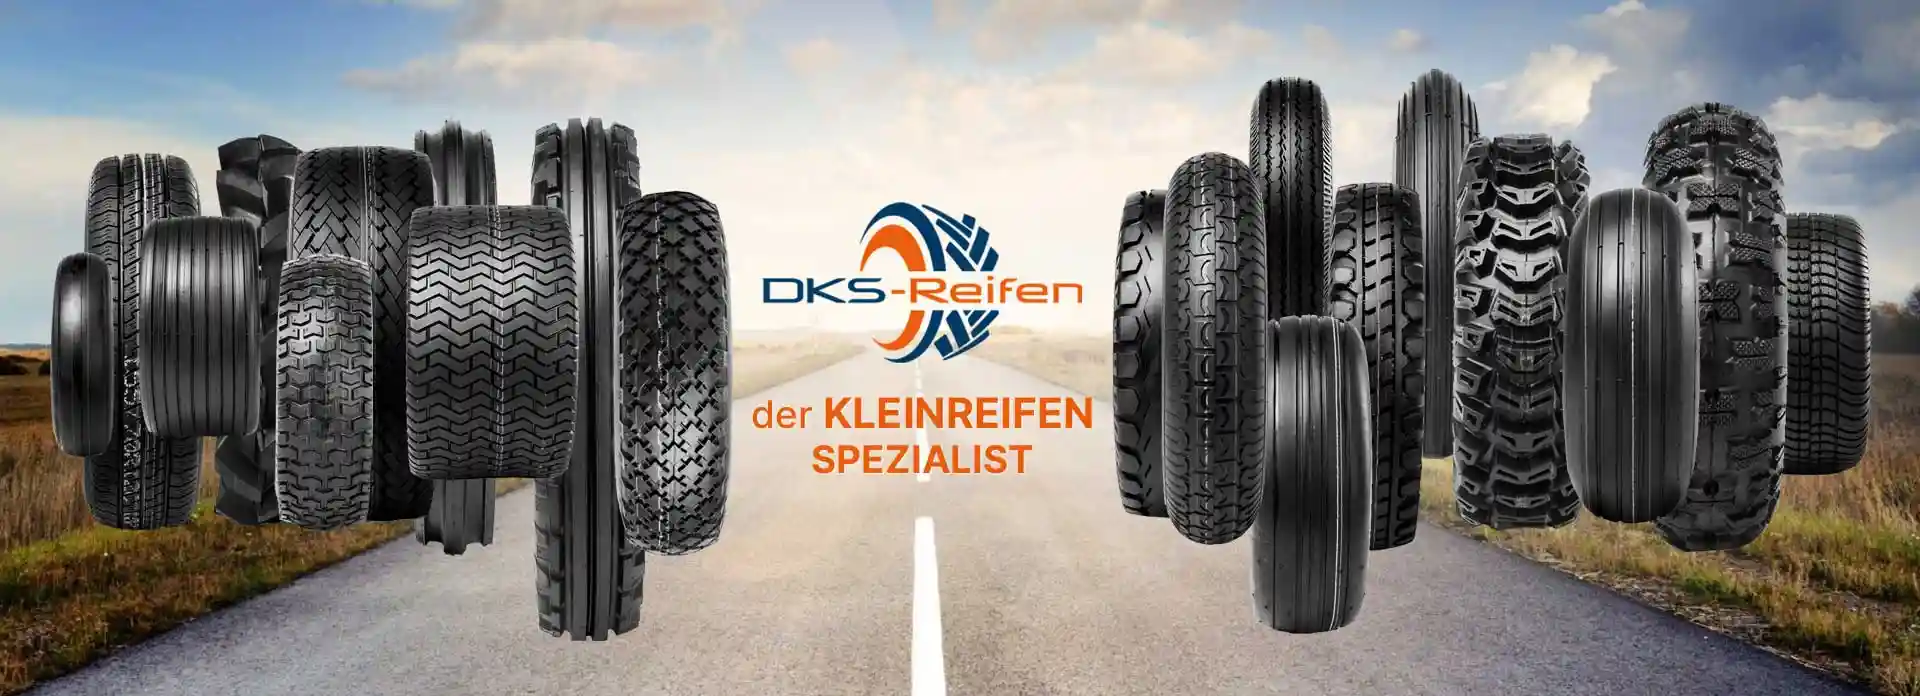 DKS Reifen: Der Onlineshop für Kleinreifen und Kompletträder mit ausgezeichnetem Service!